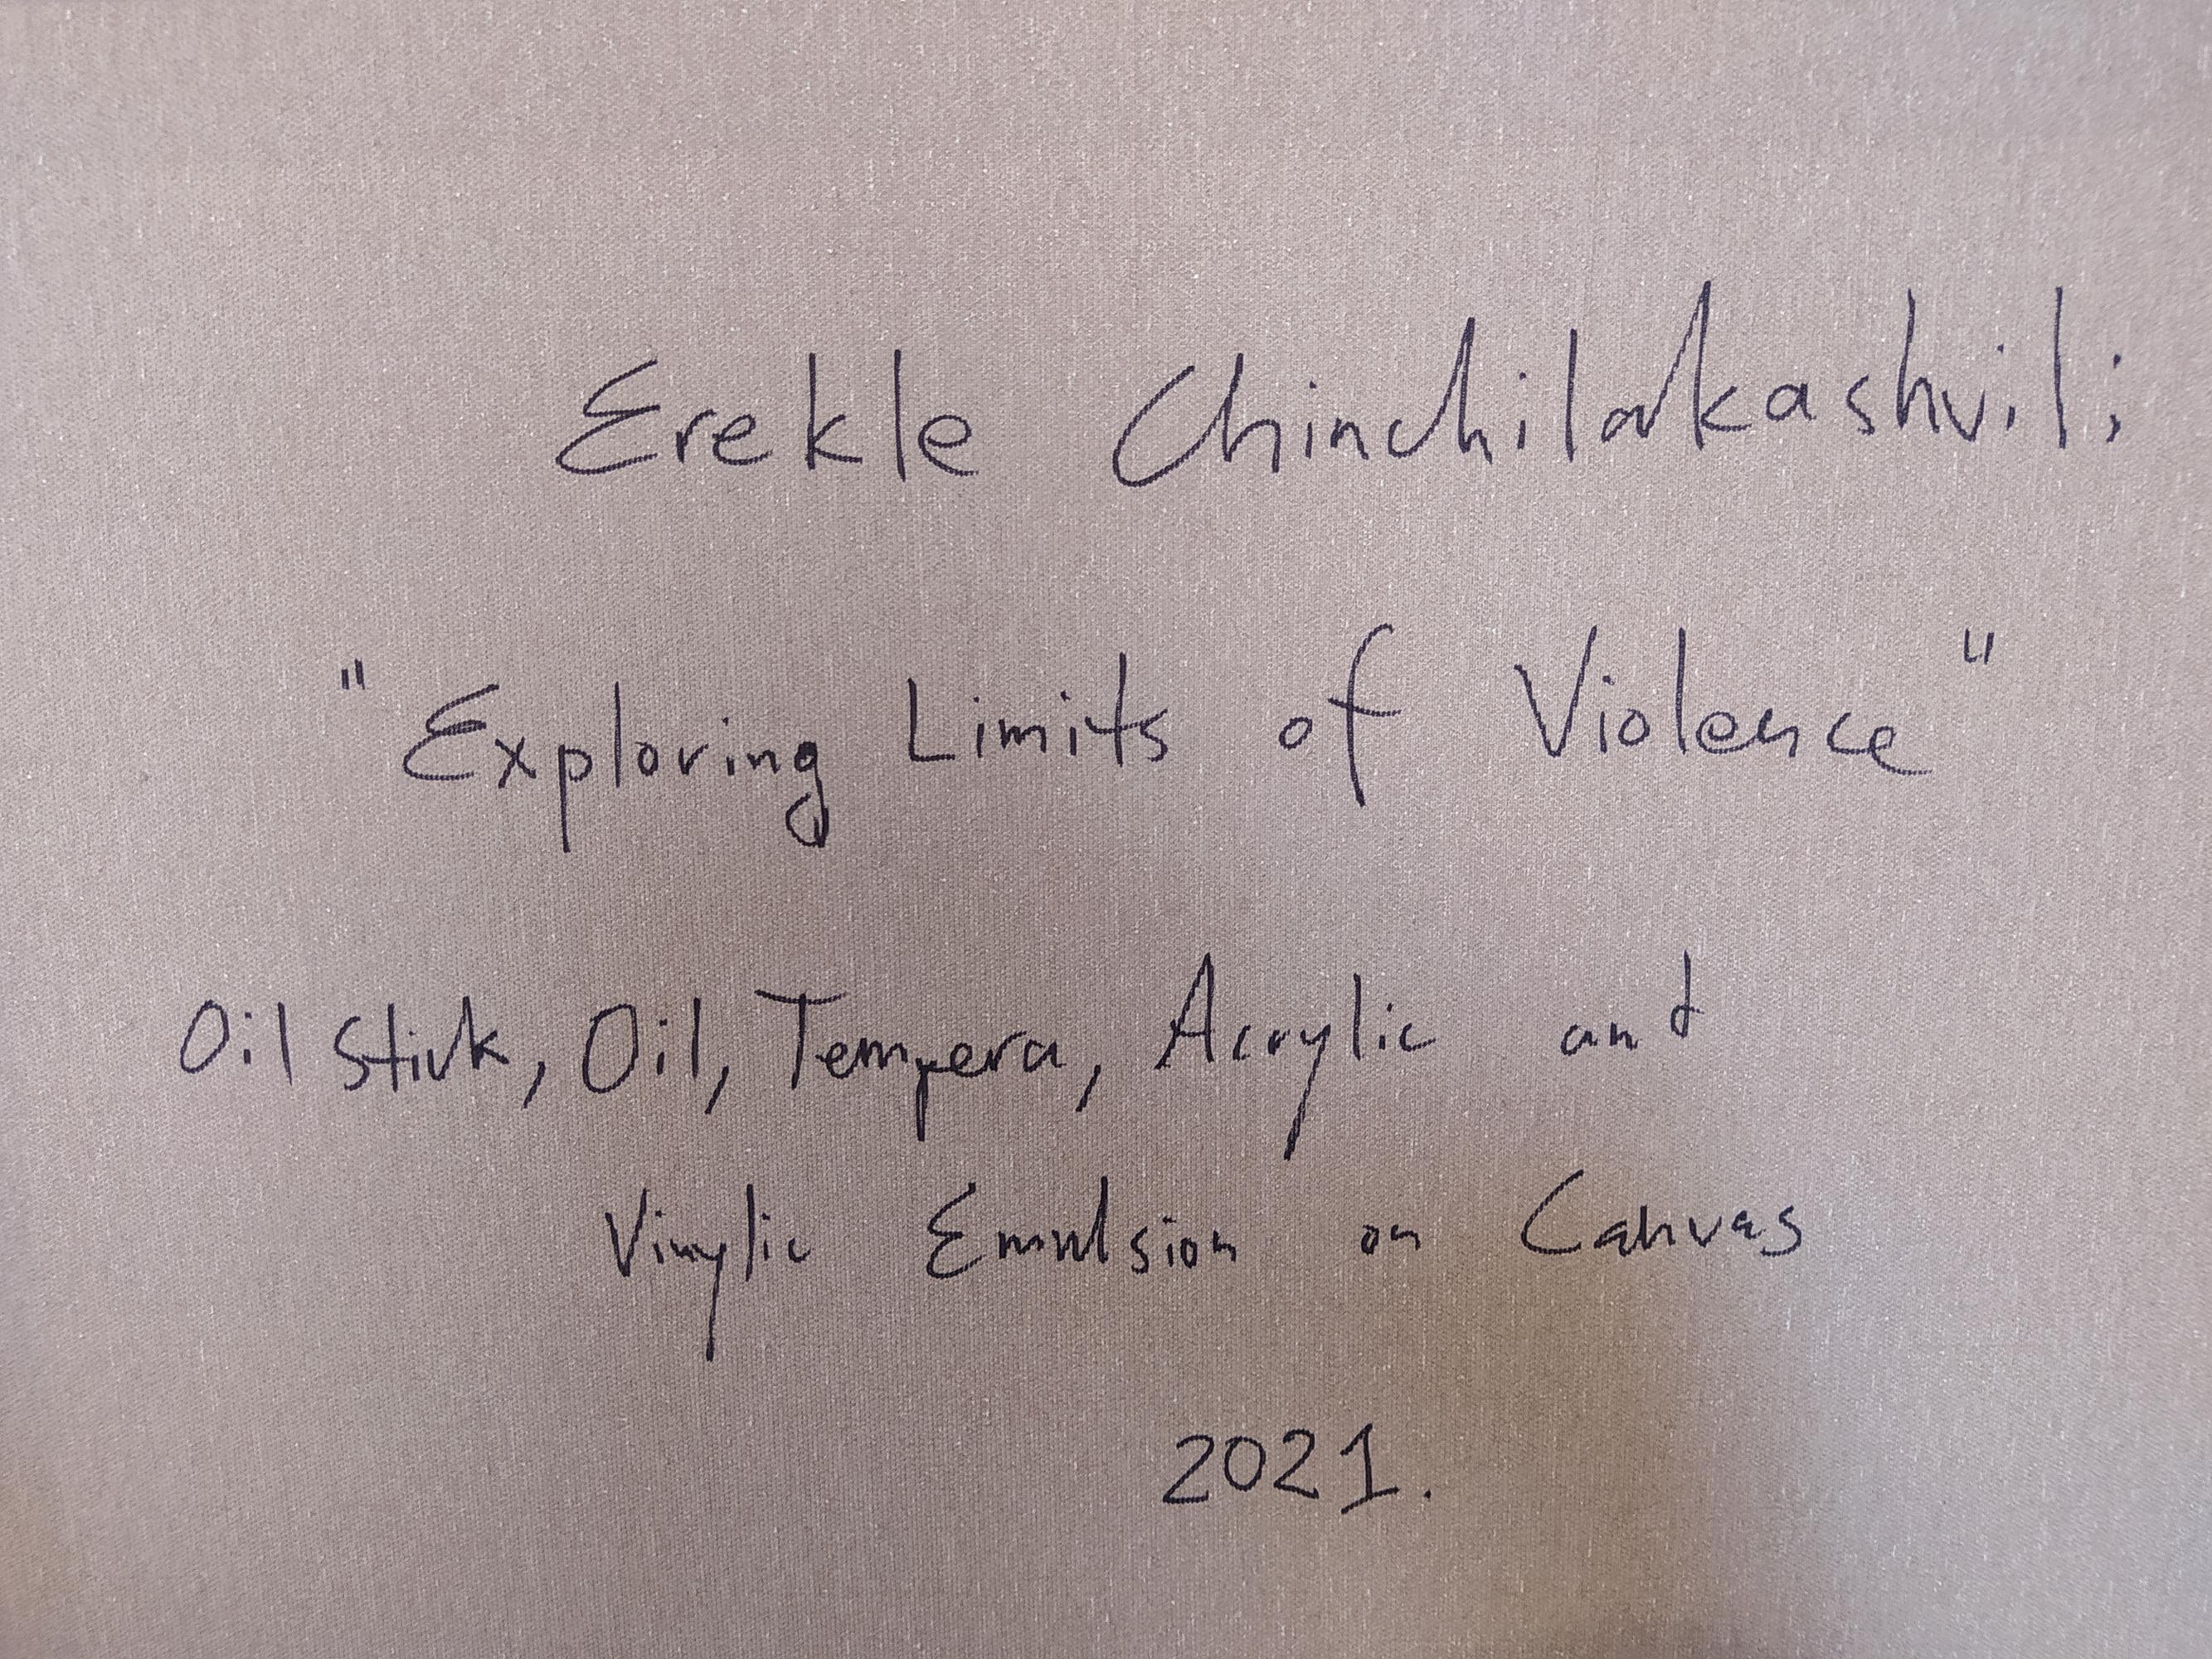 'Exploring Limits of Violence, ' Erekle Chinchilakashvili, Mixed Media Painting 6